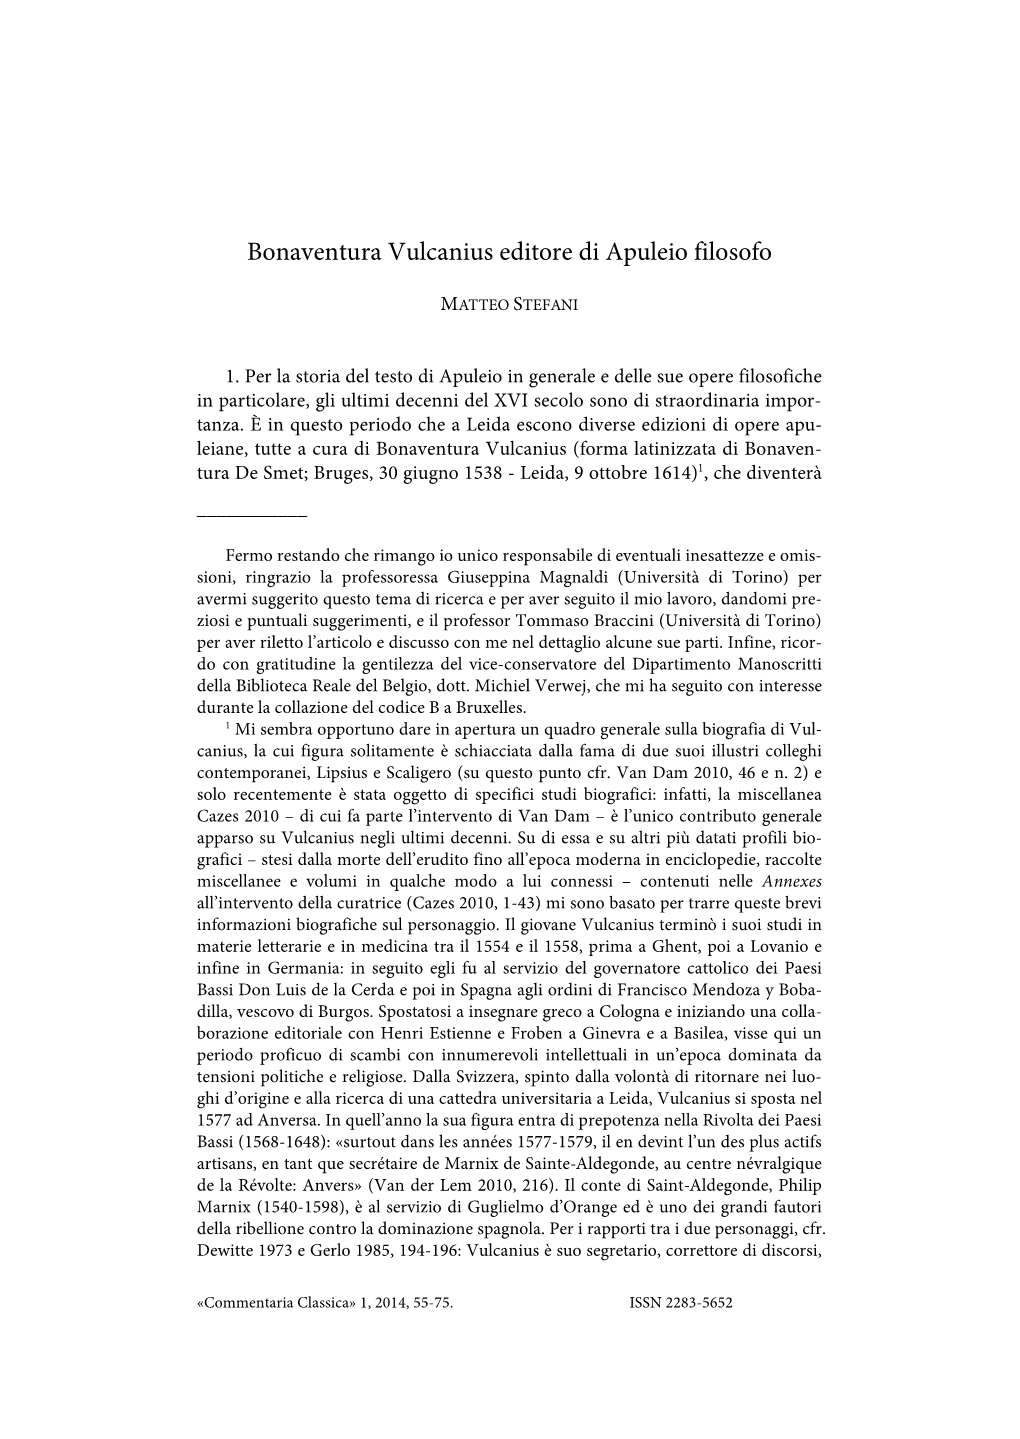 M. Stefani, Bonaventura Vulcanius Editore Di Apuleio Filosofo